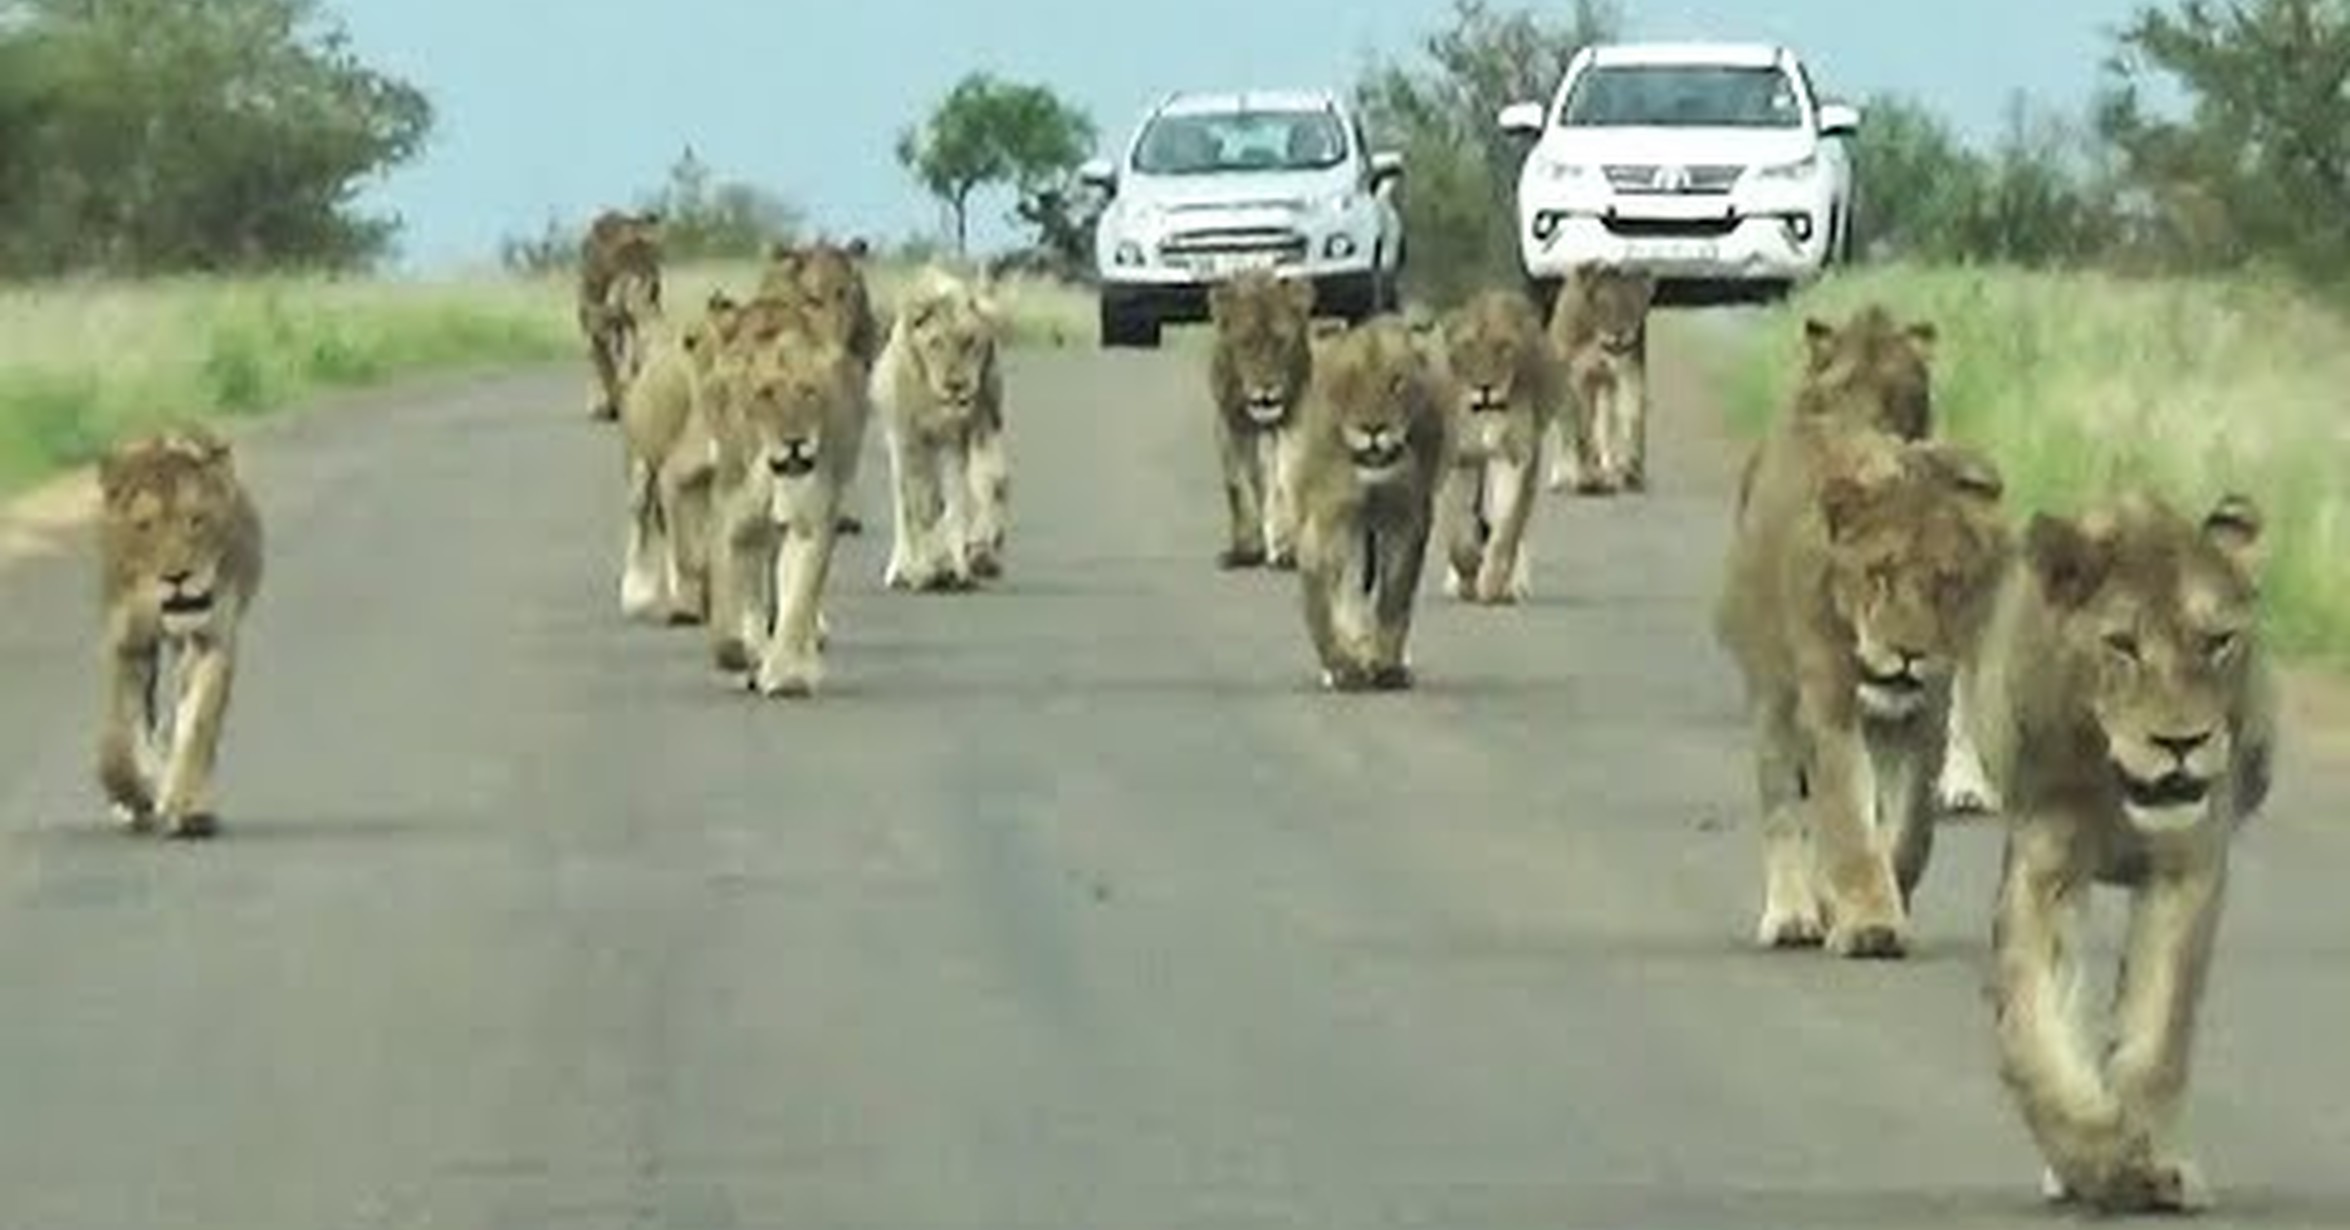 No tengo tele! / La gran manada de leones desfilando en plena carretera